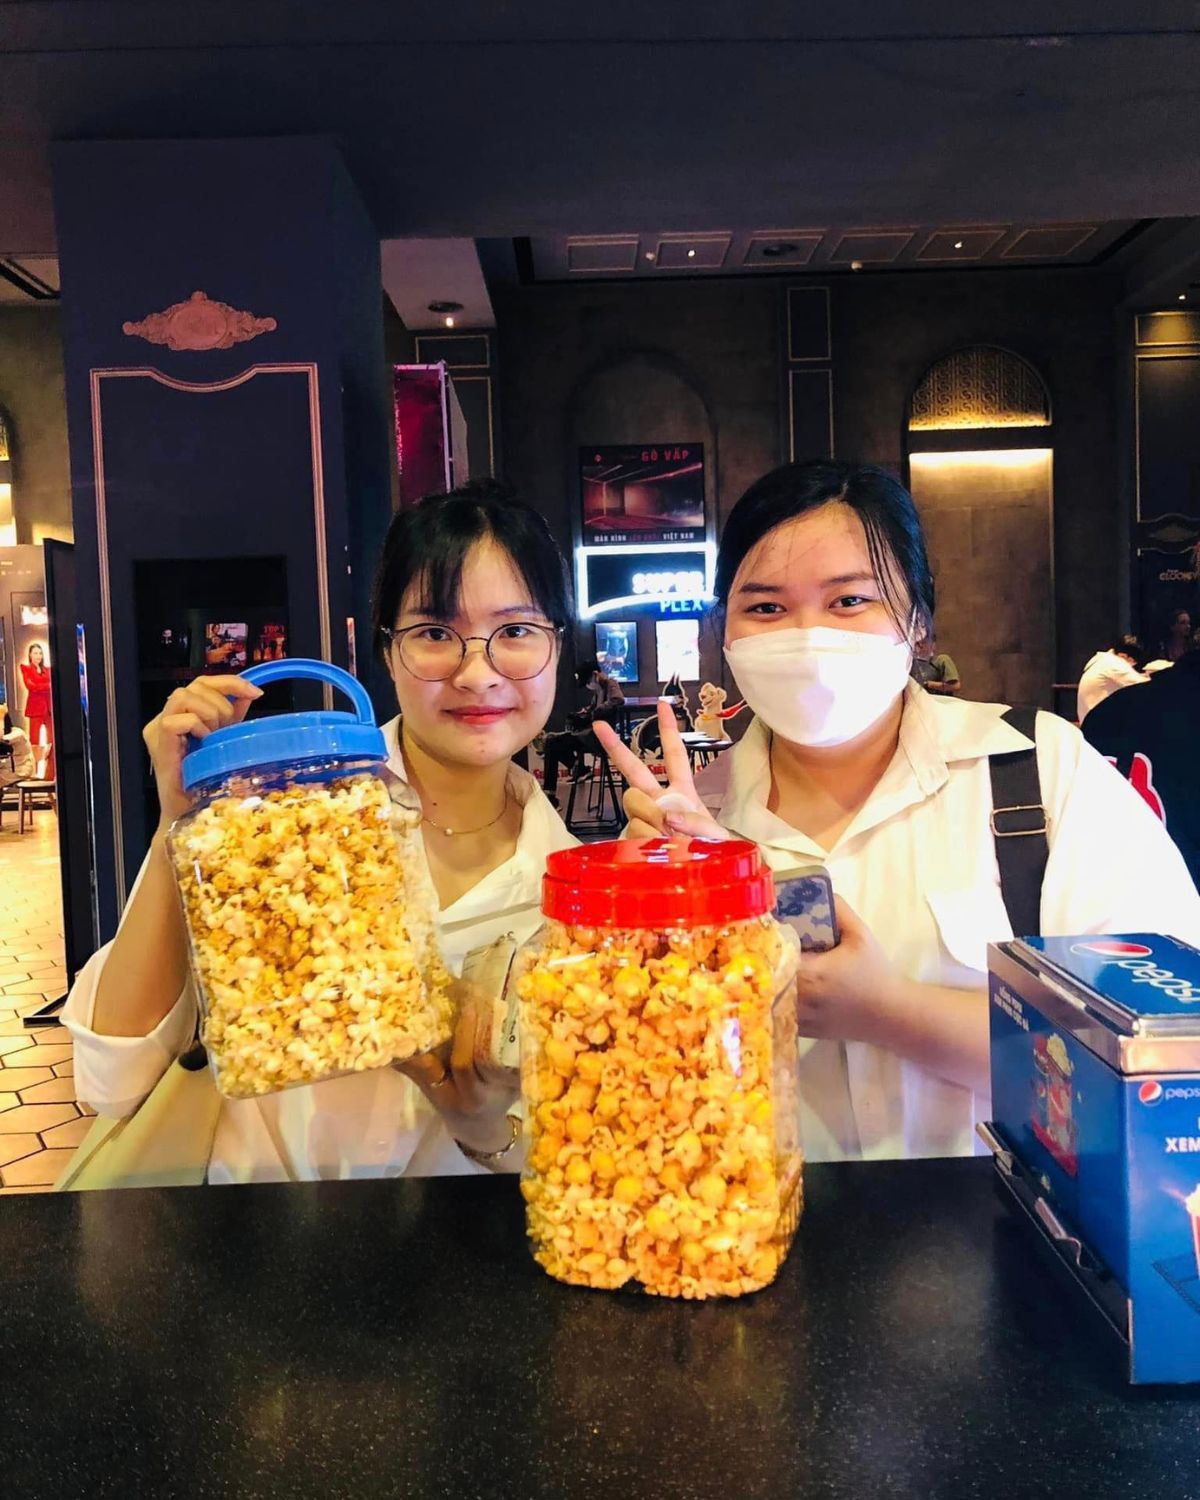 Lotte Cinema khuyến mãi bắp rang bơ